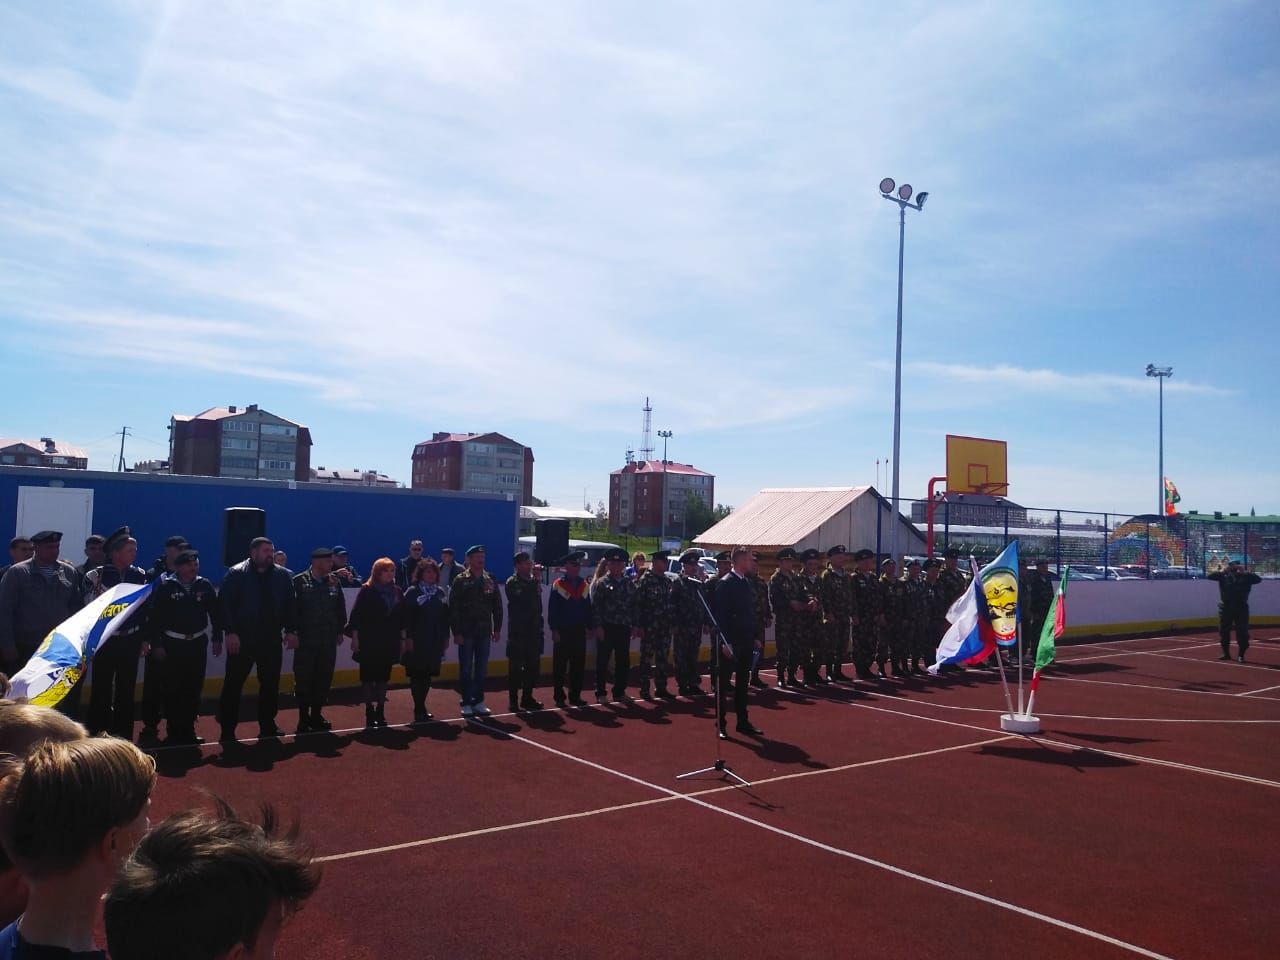 Нурлатские пограничники в преддверии праздника провели соревнования по мини-футболу среди учеников